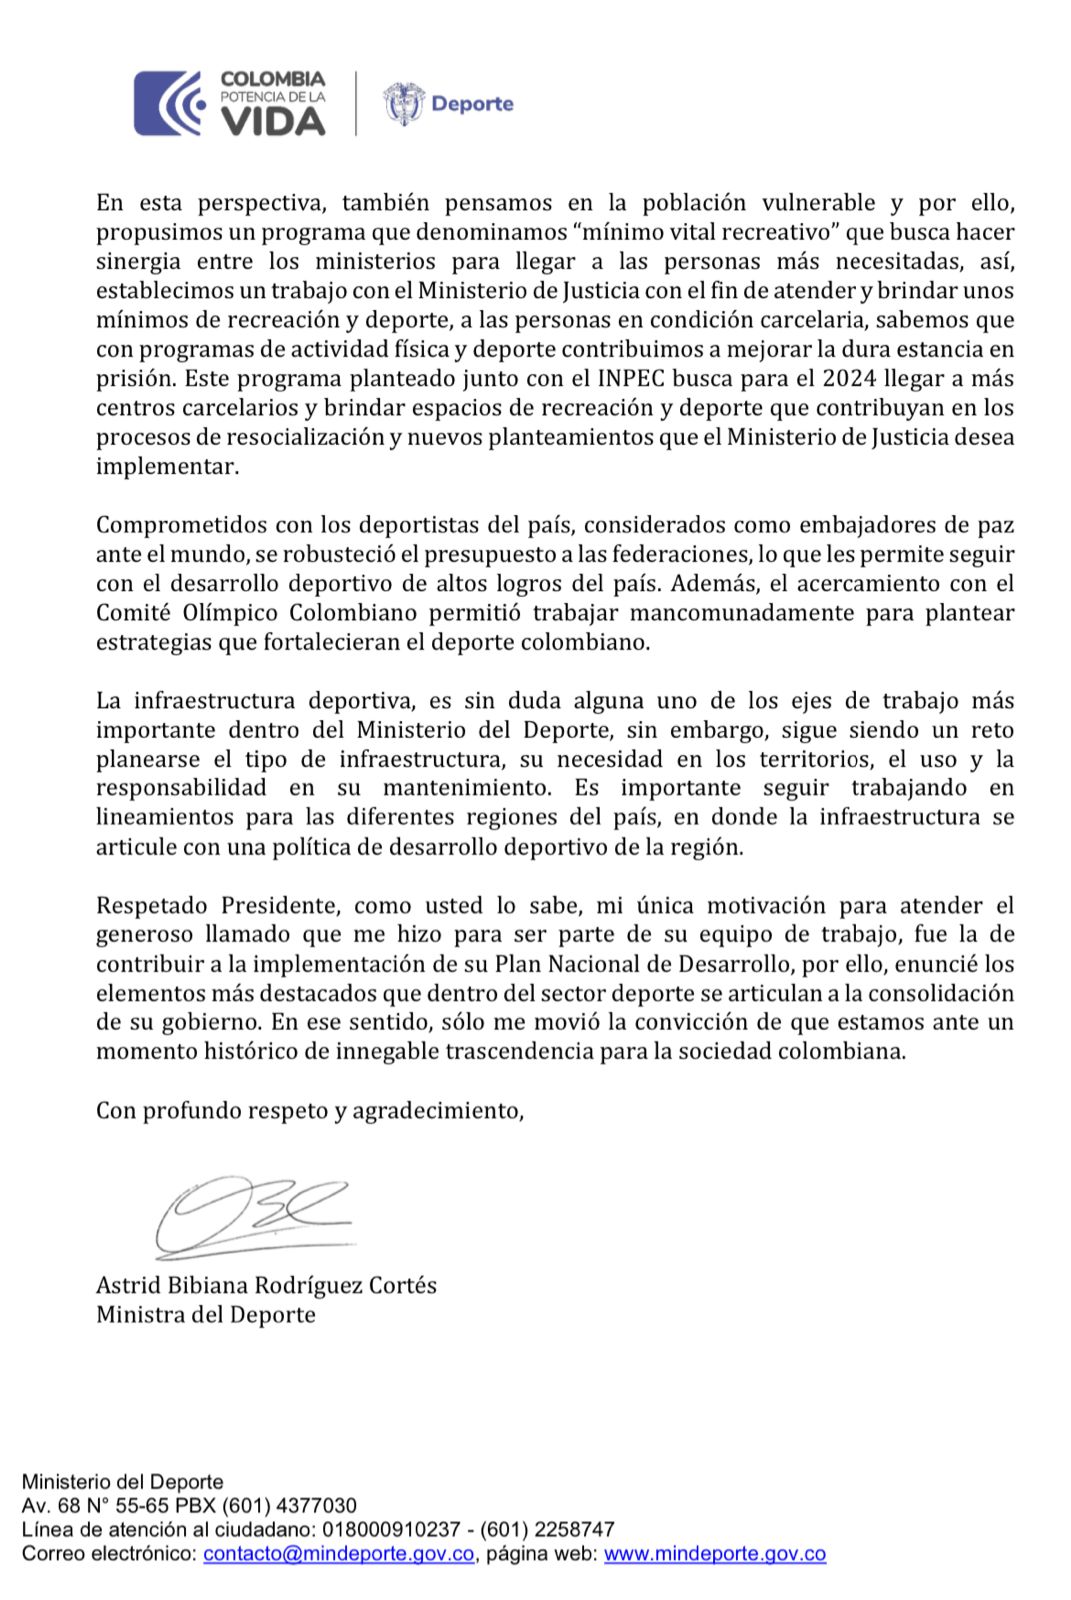 Astrid Rodríguez renunció al MinDeportes